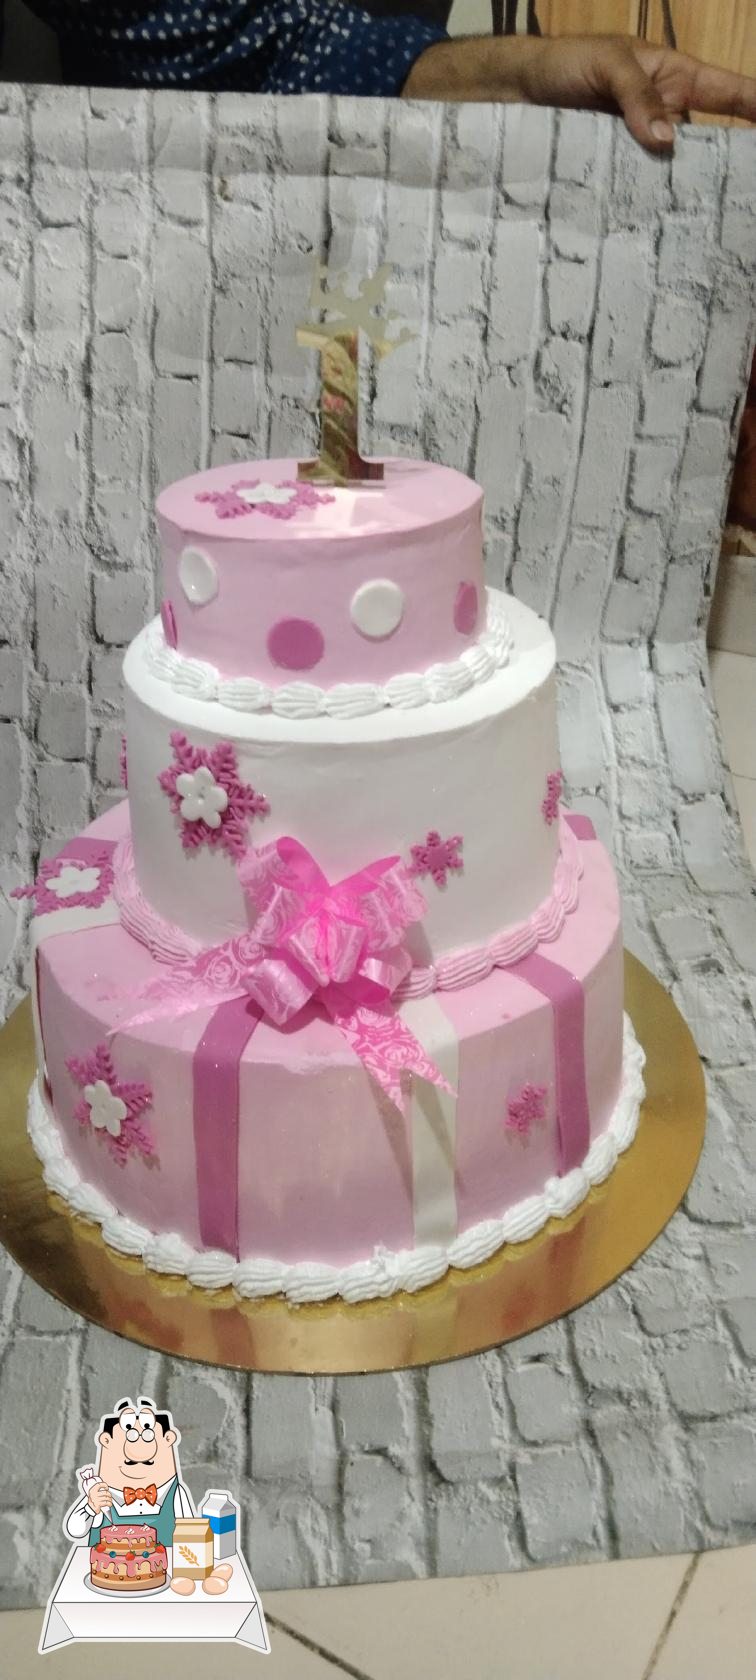 Heart ship cake #cakedecorating #trendingshorts from Dp Baker's - YouTube